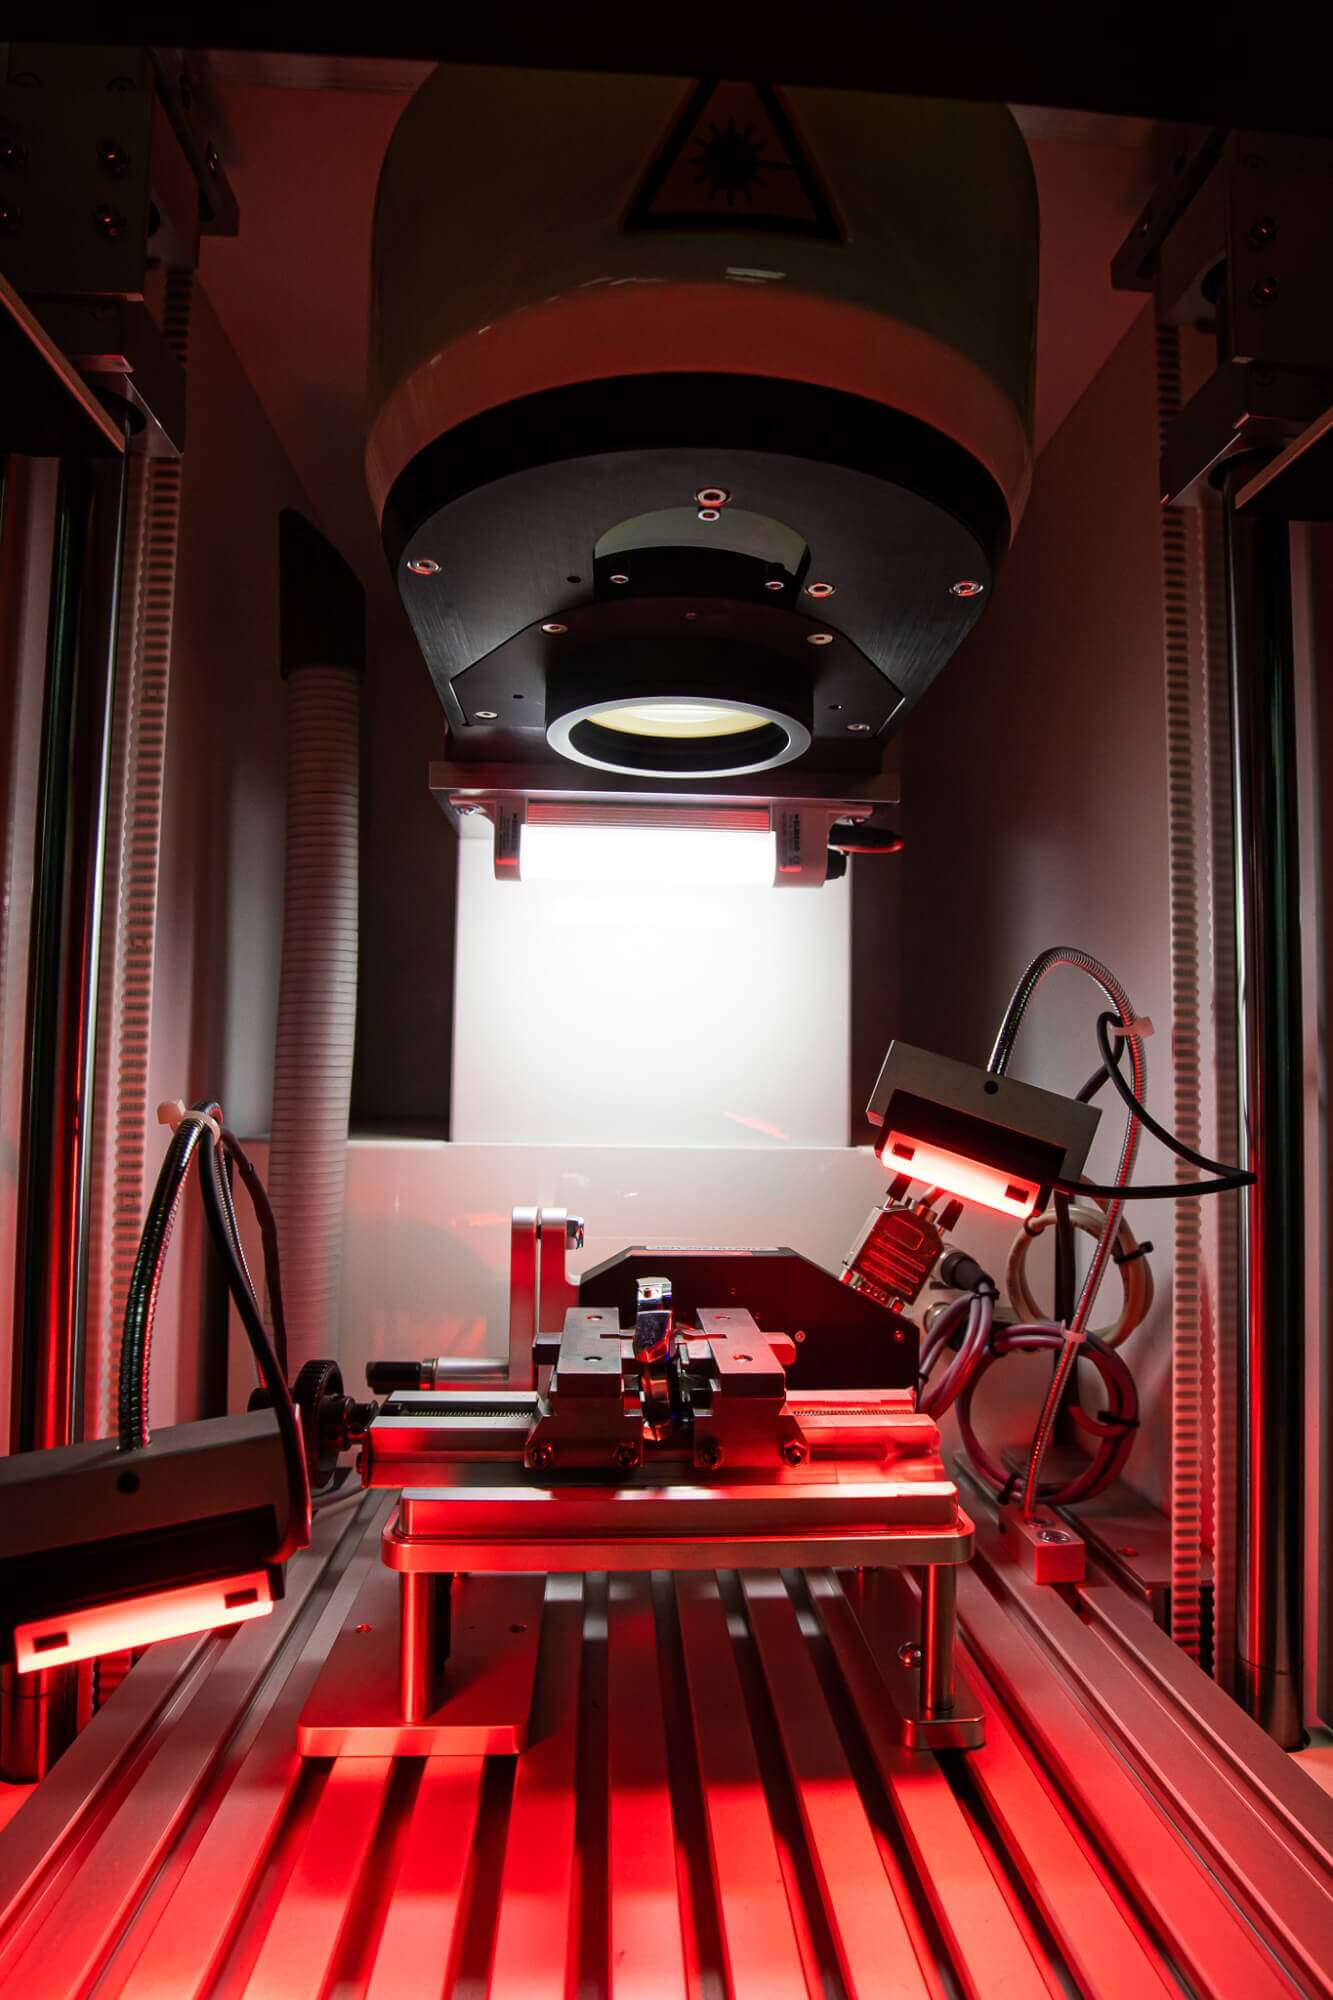 Image showing professional laser engraving machine